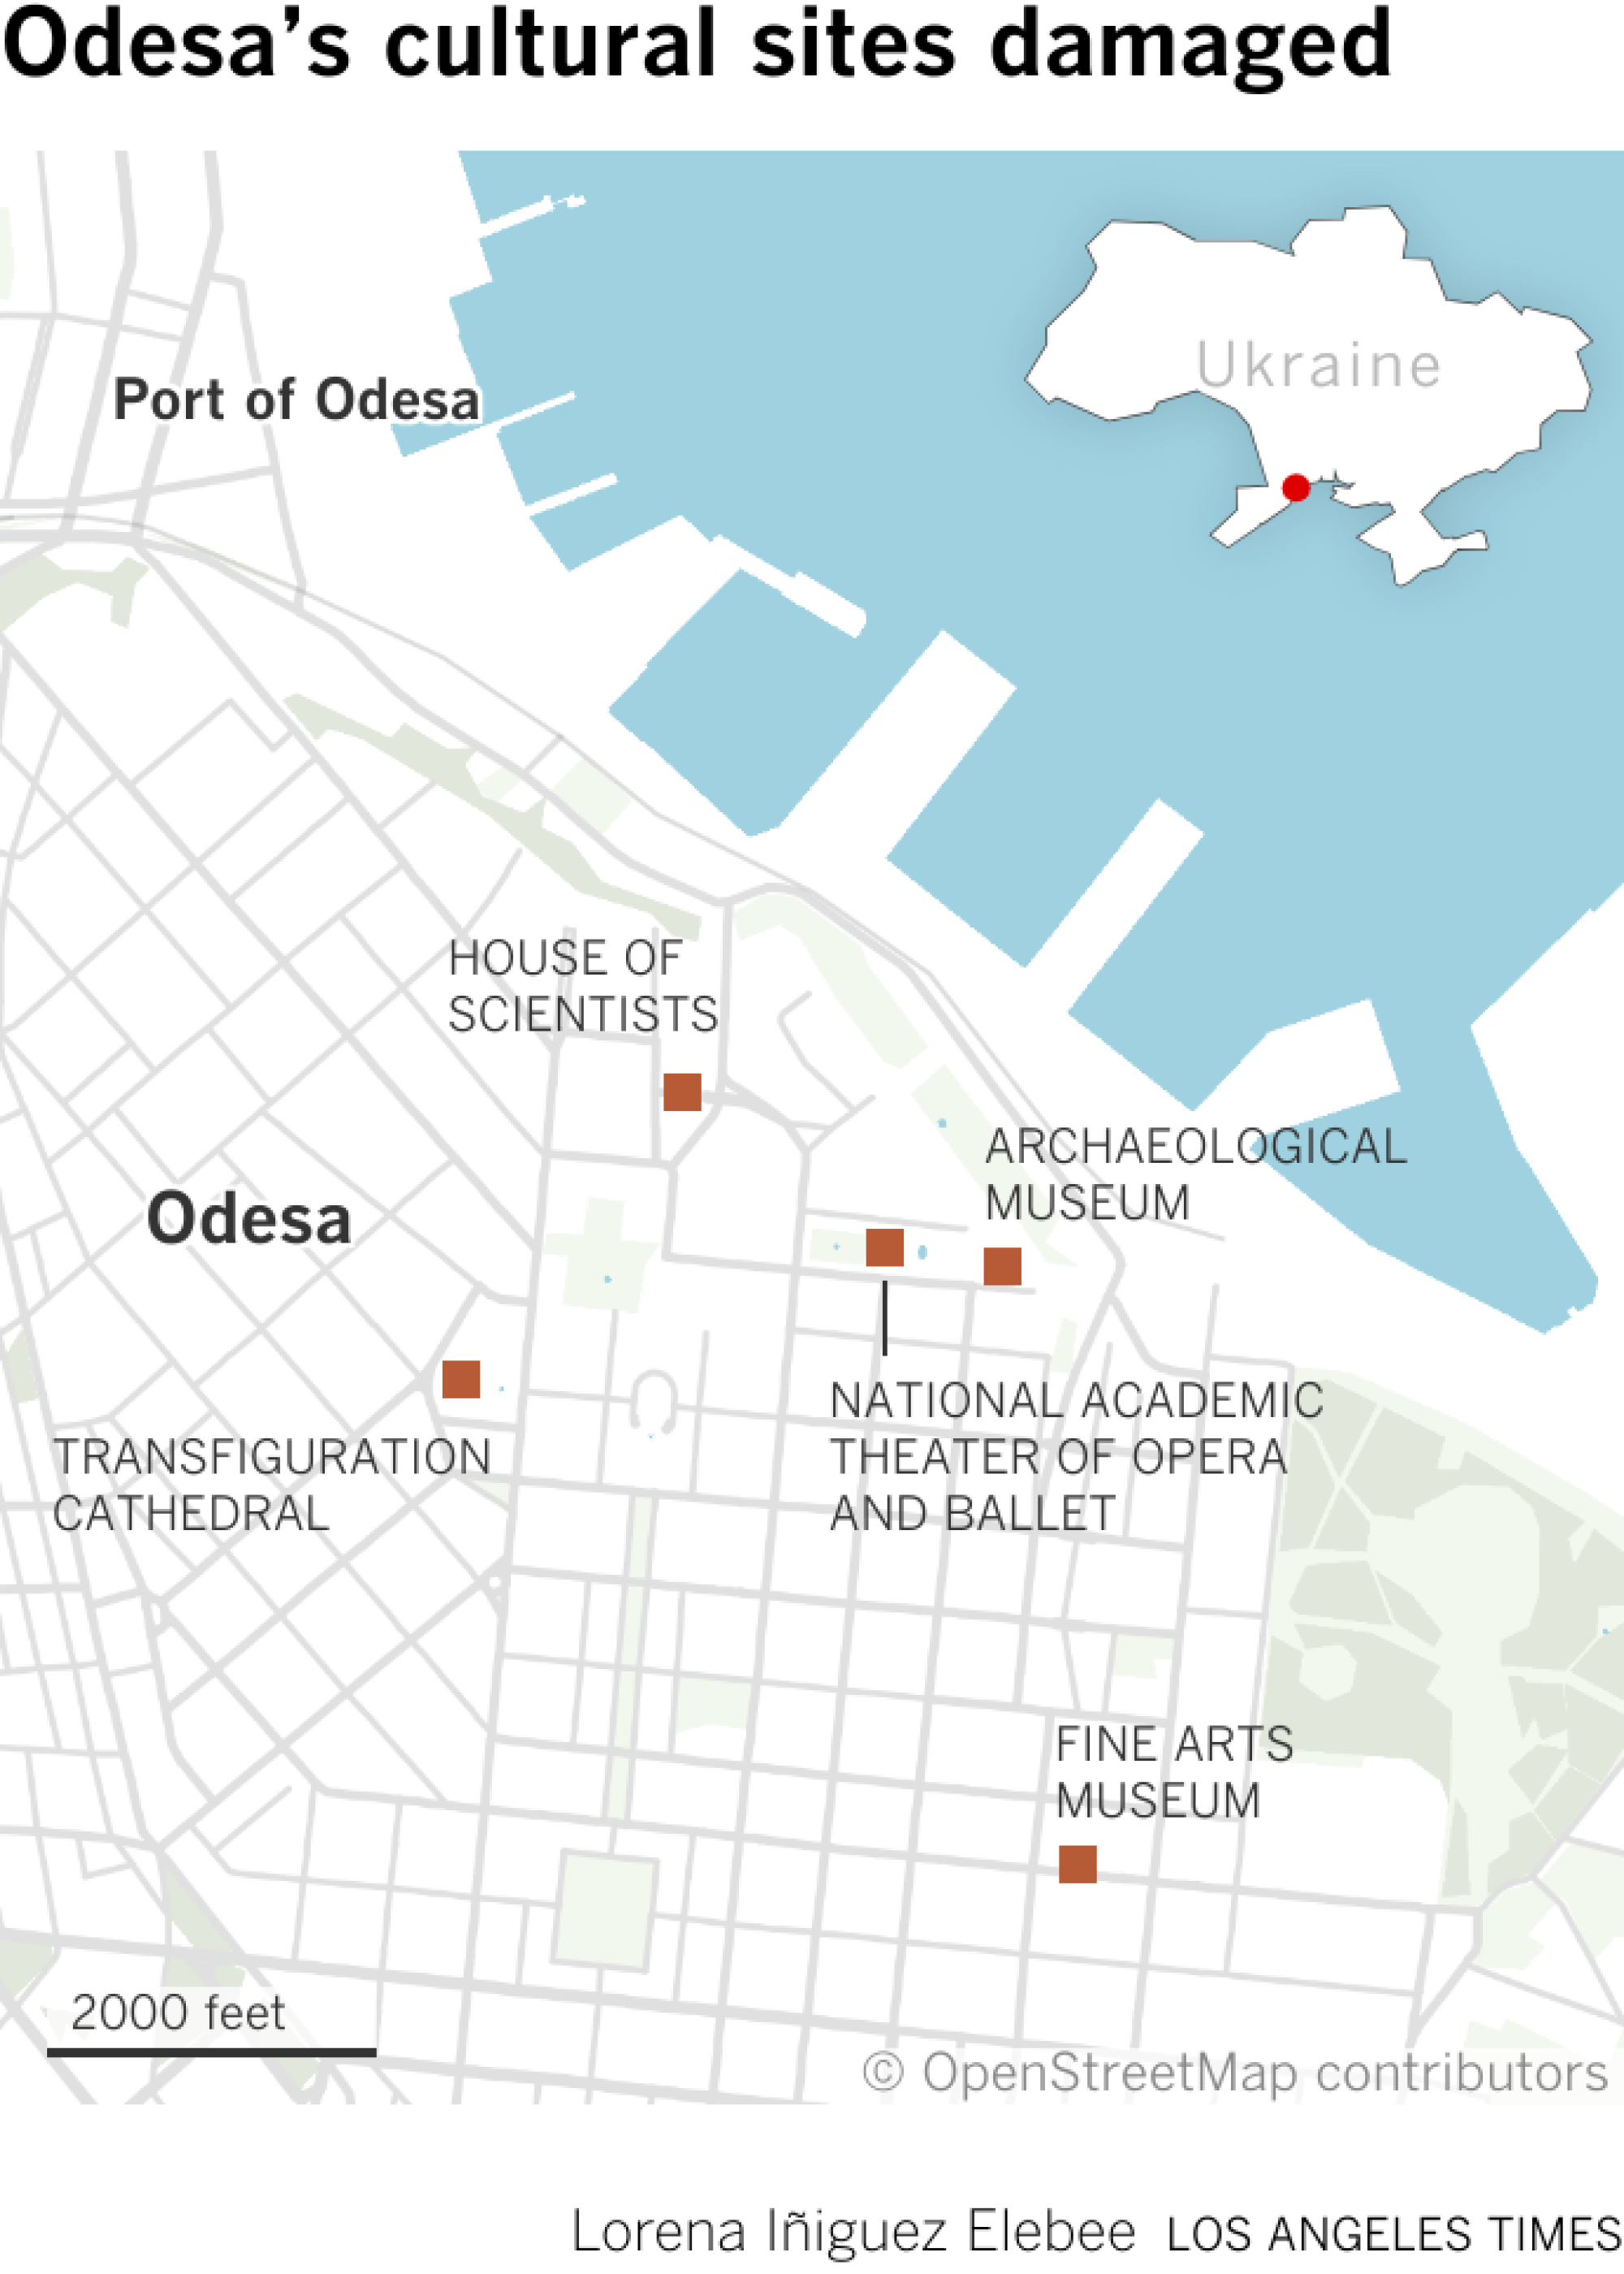 Mapa mostra locais culturais danificados em Odesa, Ucrânia.